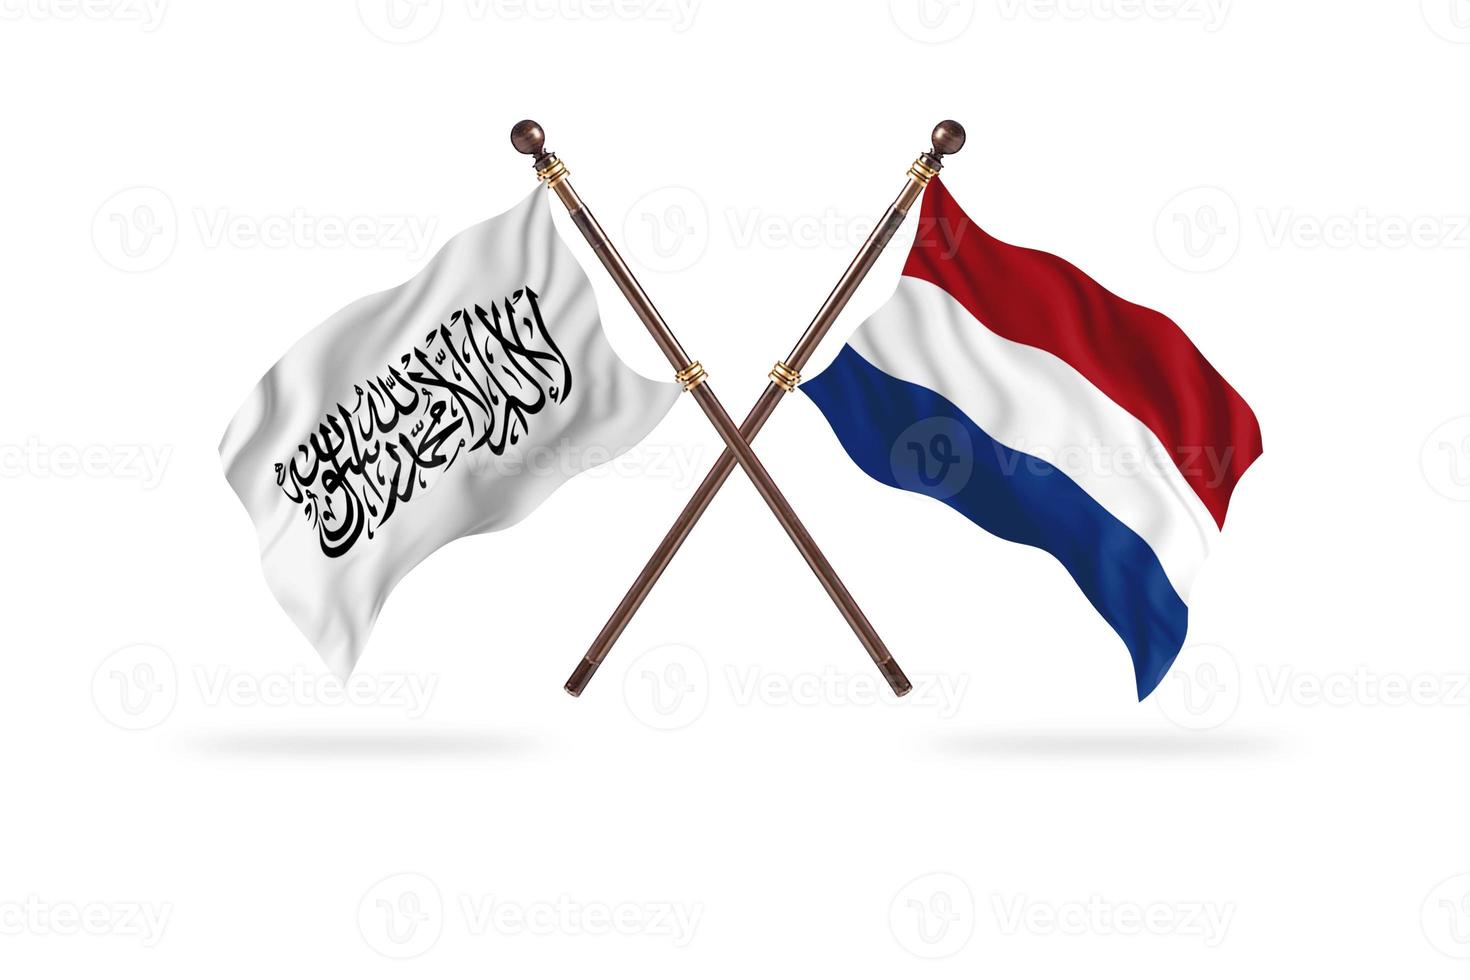 emirado islâmico do afeganistão contra holanda dois países bandeiras foto